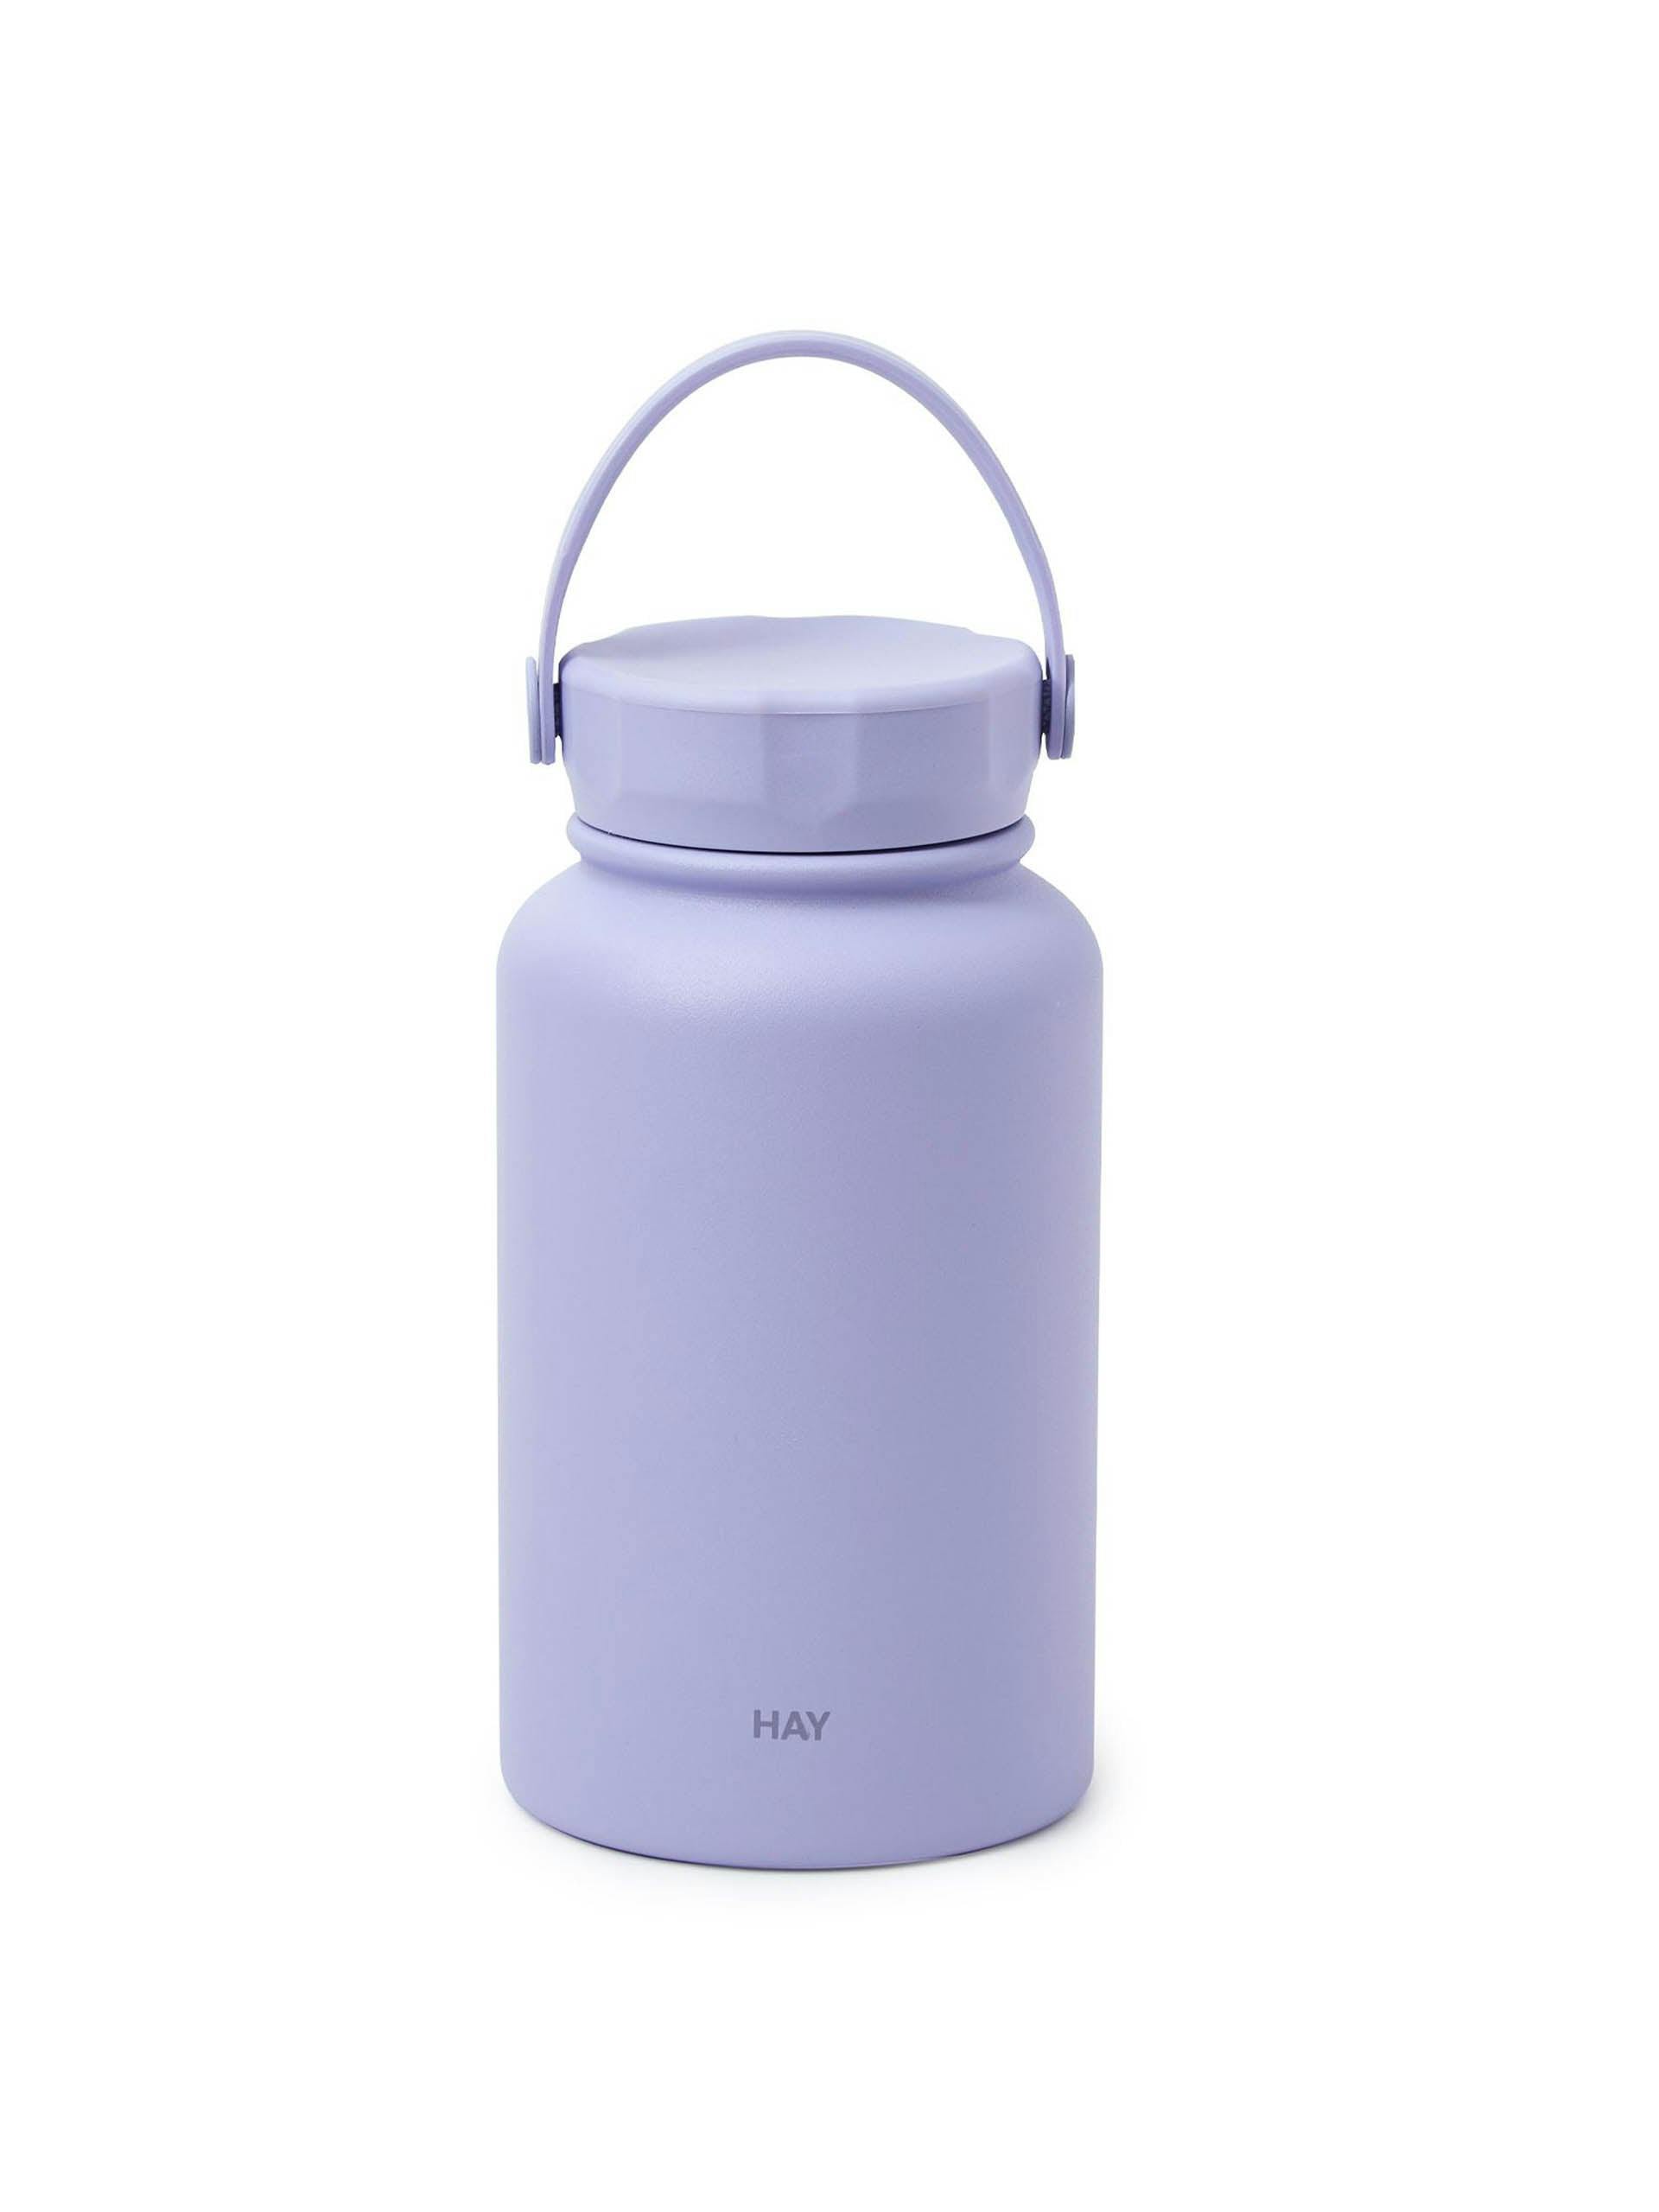 Mono thermal bottle in lavender